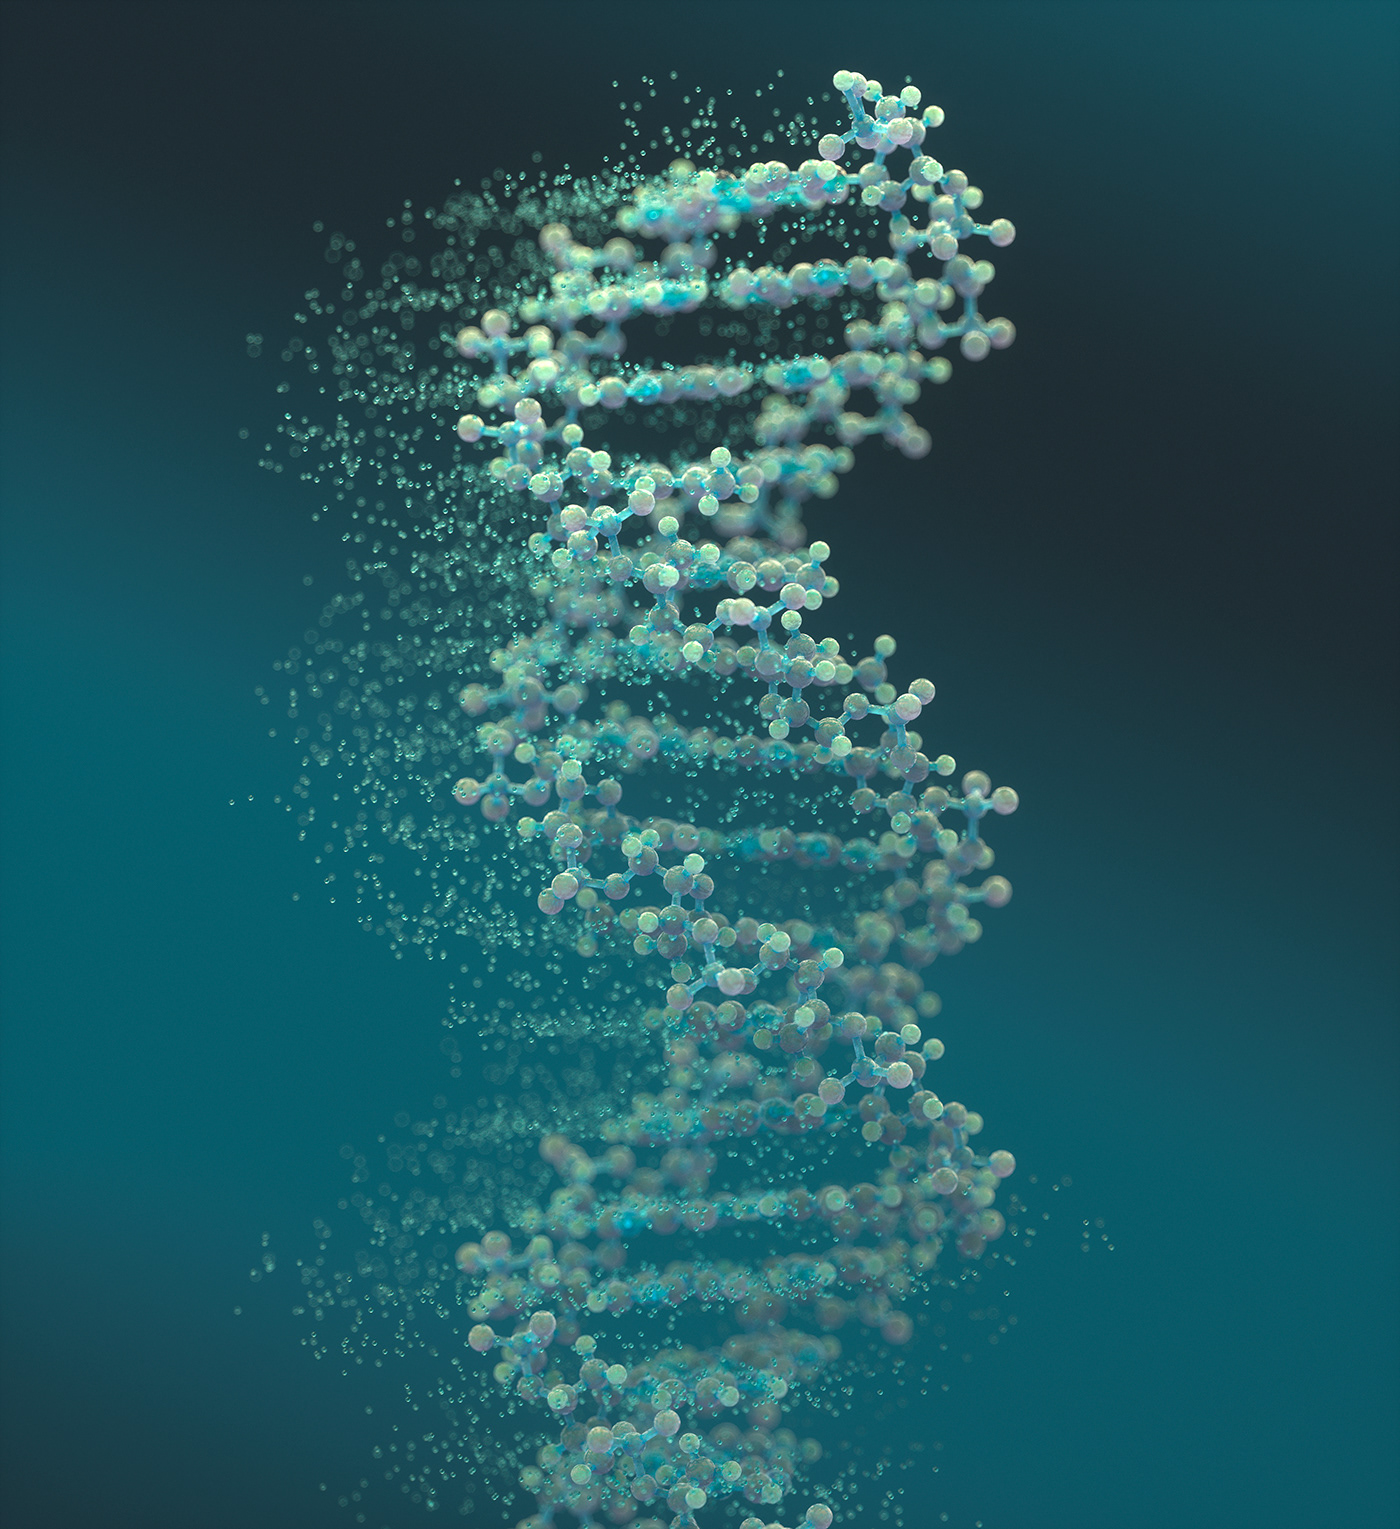 bio tech biology chemistry Digital Art  DNA lightwave 3d medical illustration molecule Octane Render science